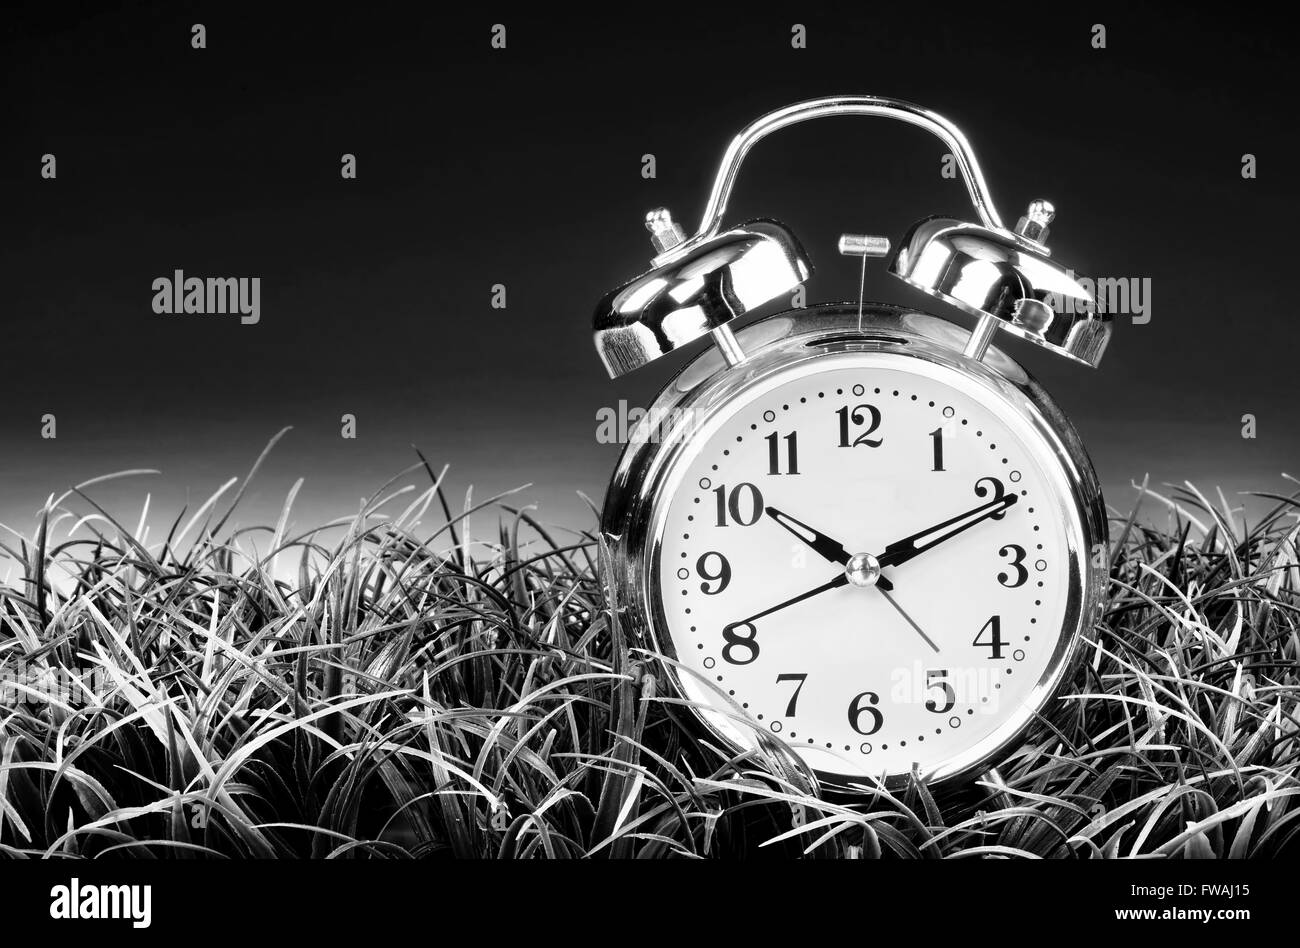 Reloj despertador antiguo en blanco y negro con espacio para su tipo. Foto de stock